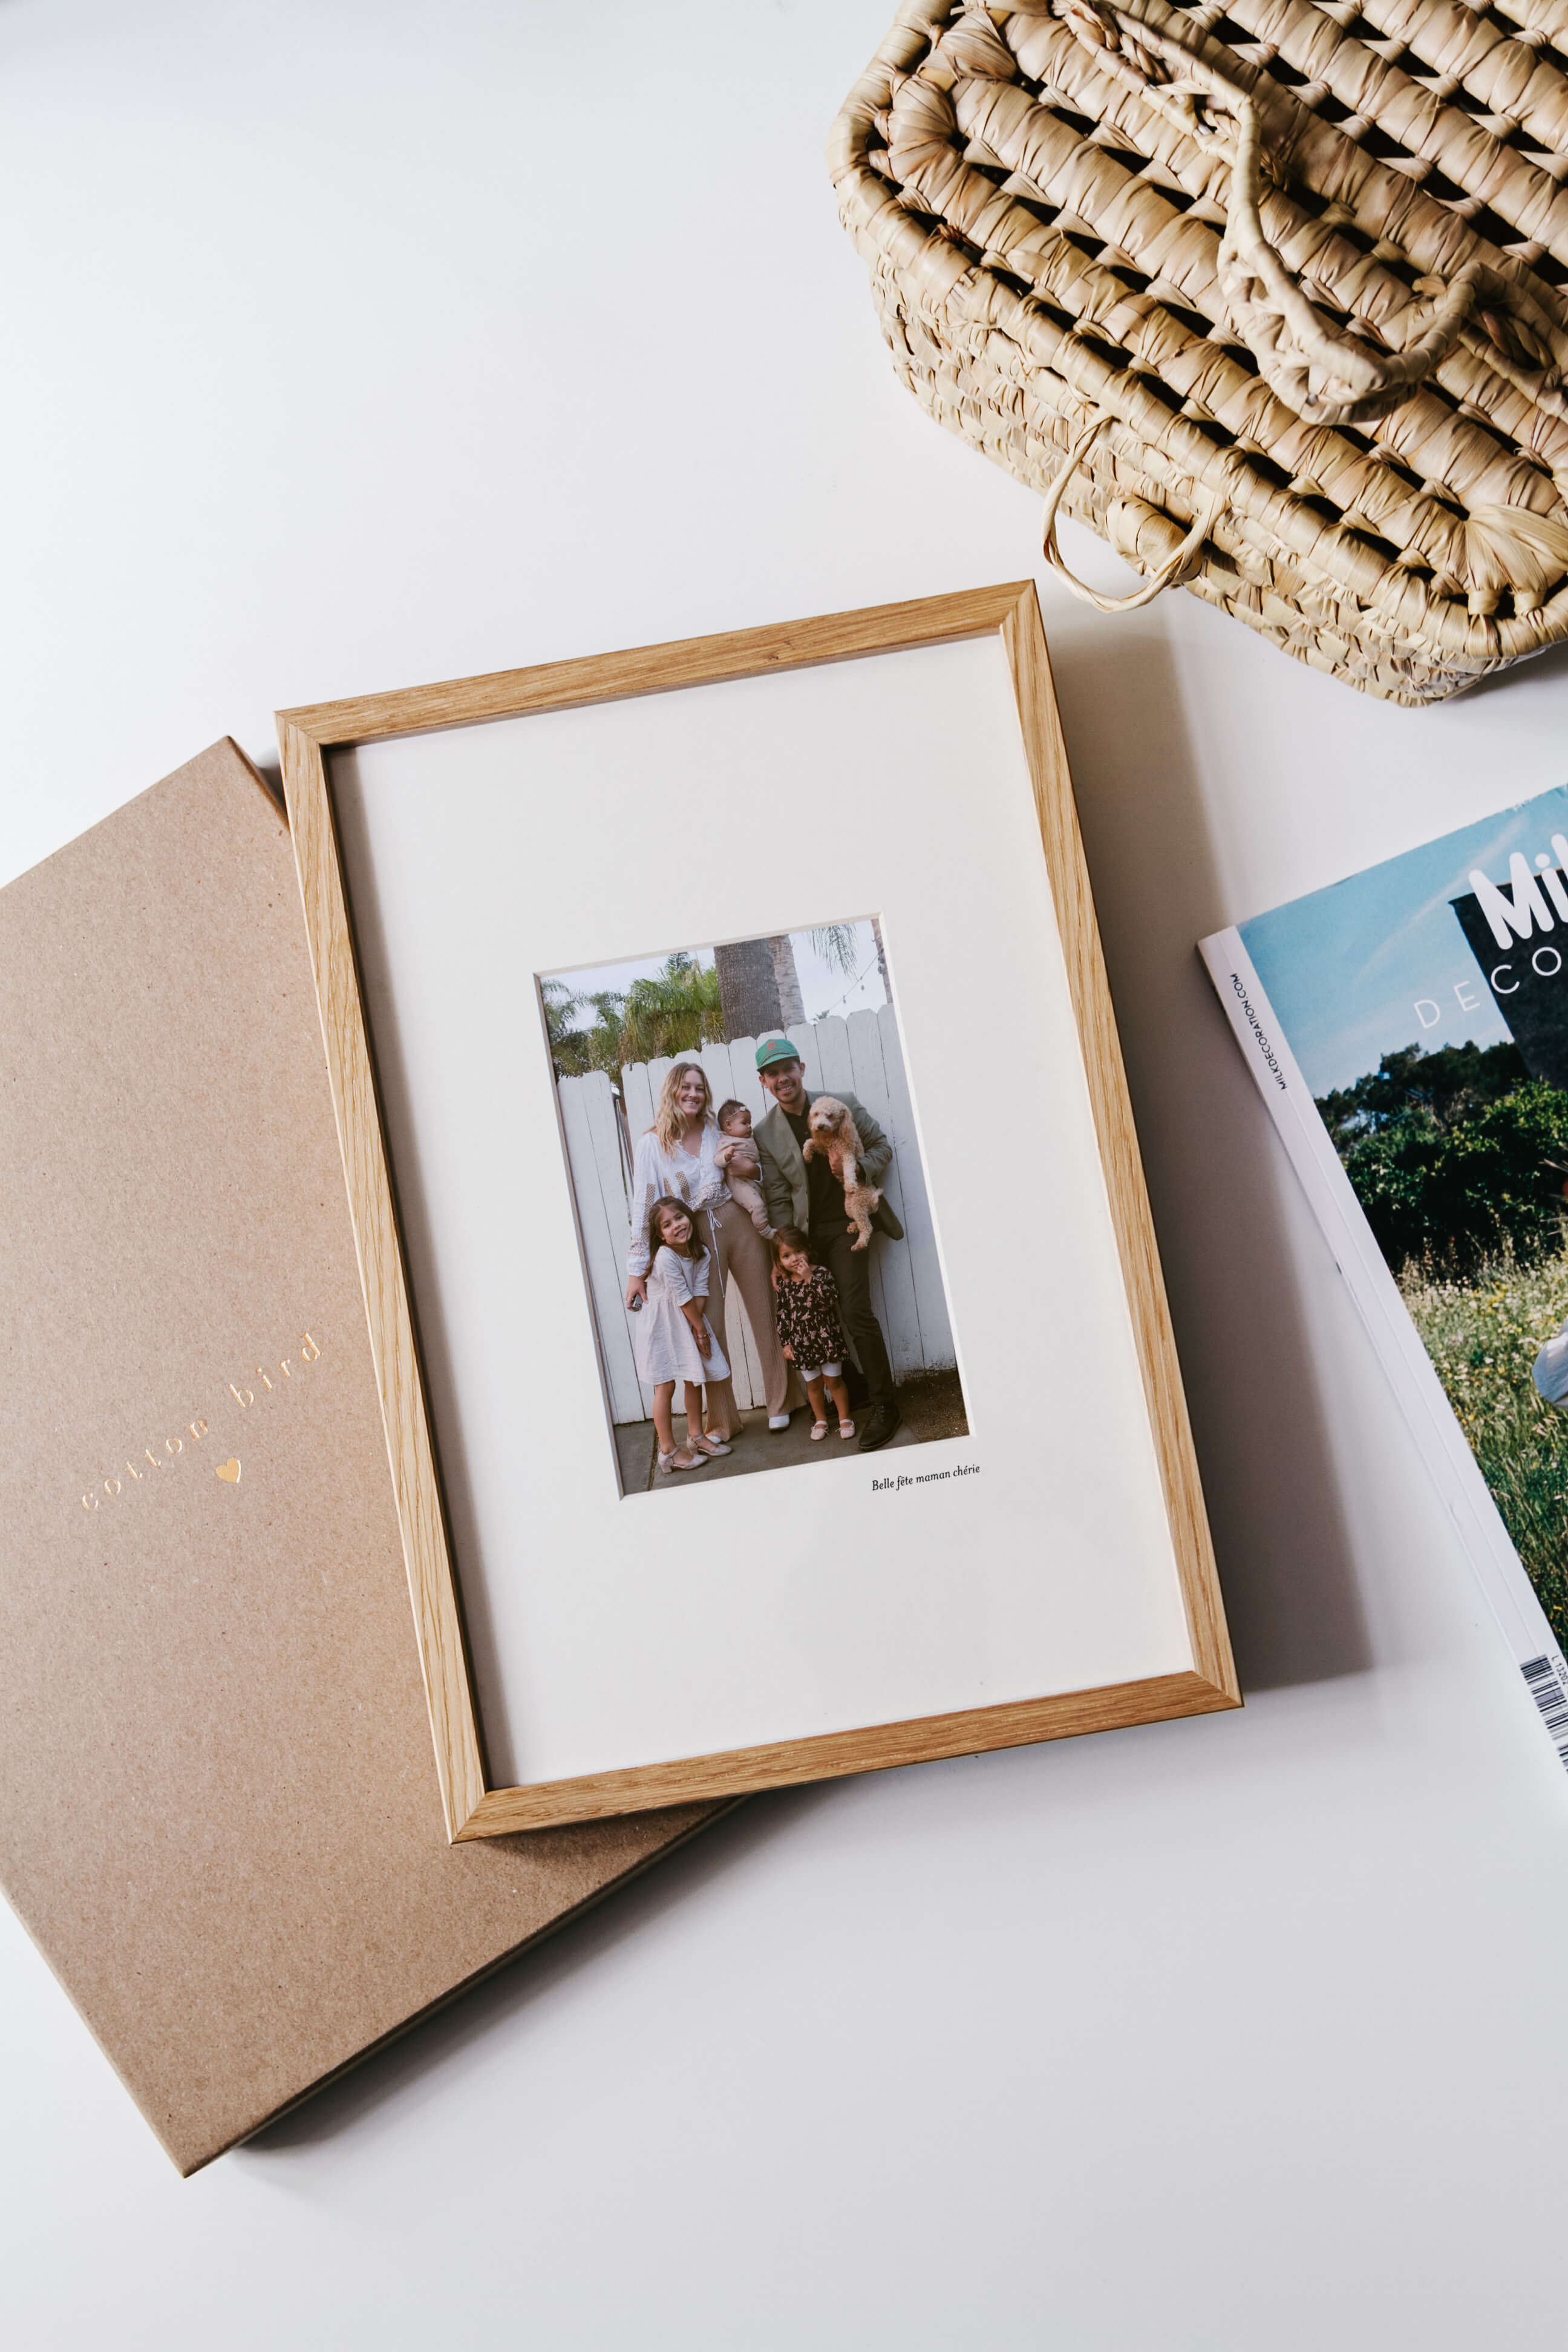 Un cadre photo en bois personnalisé avec une photographie de famille.